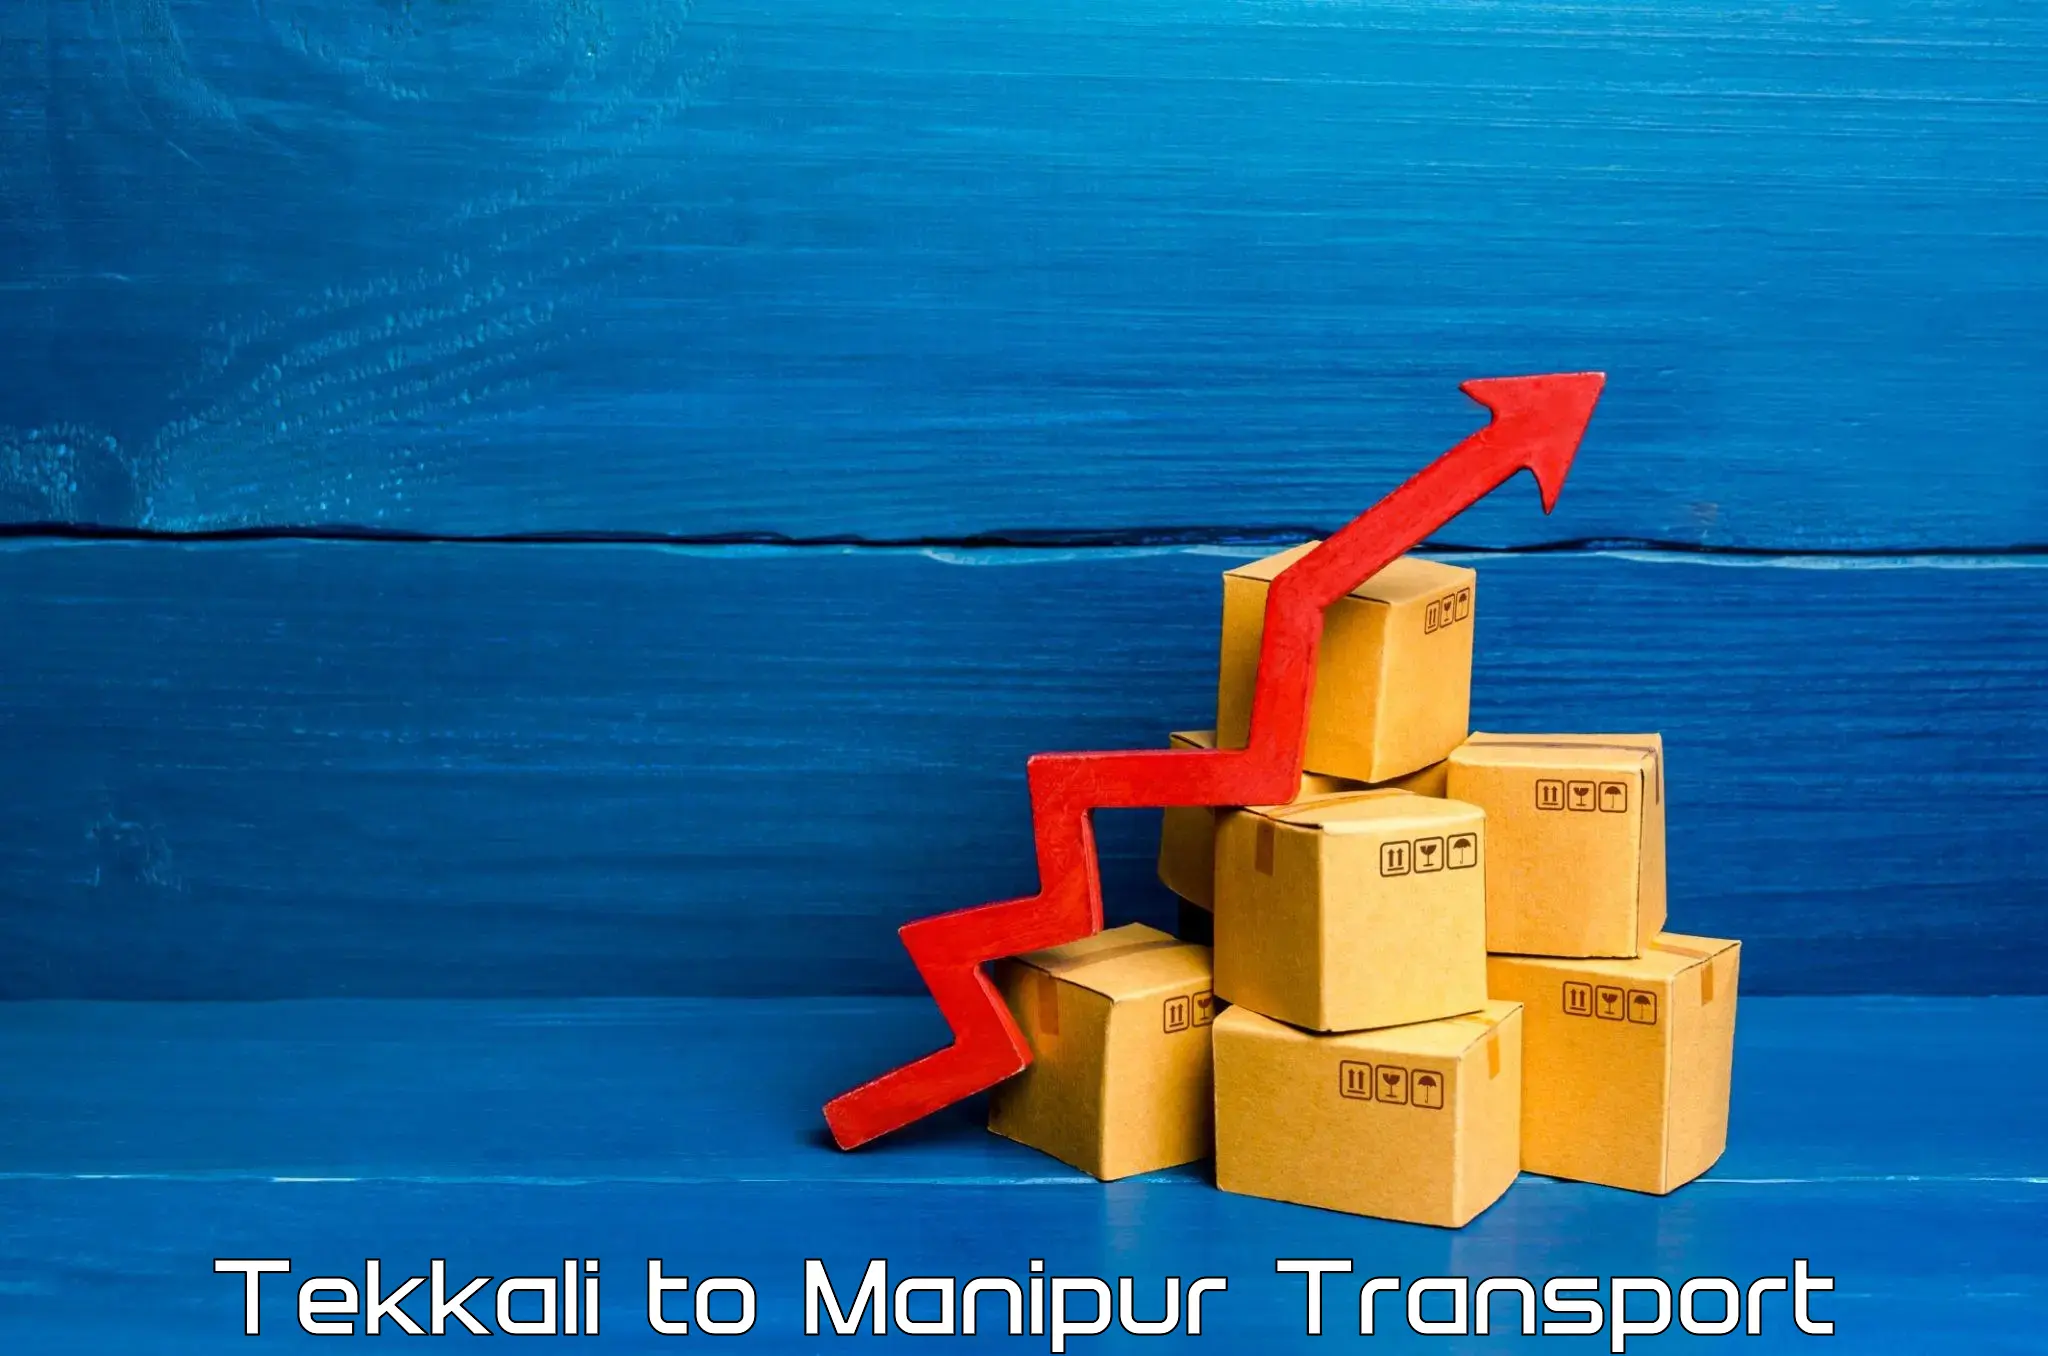 Furniture transport service Tekkali to Manipur